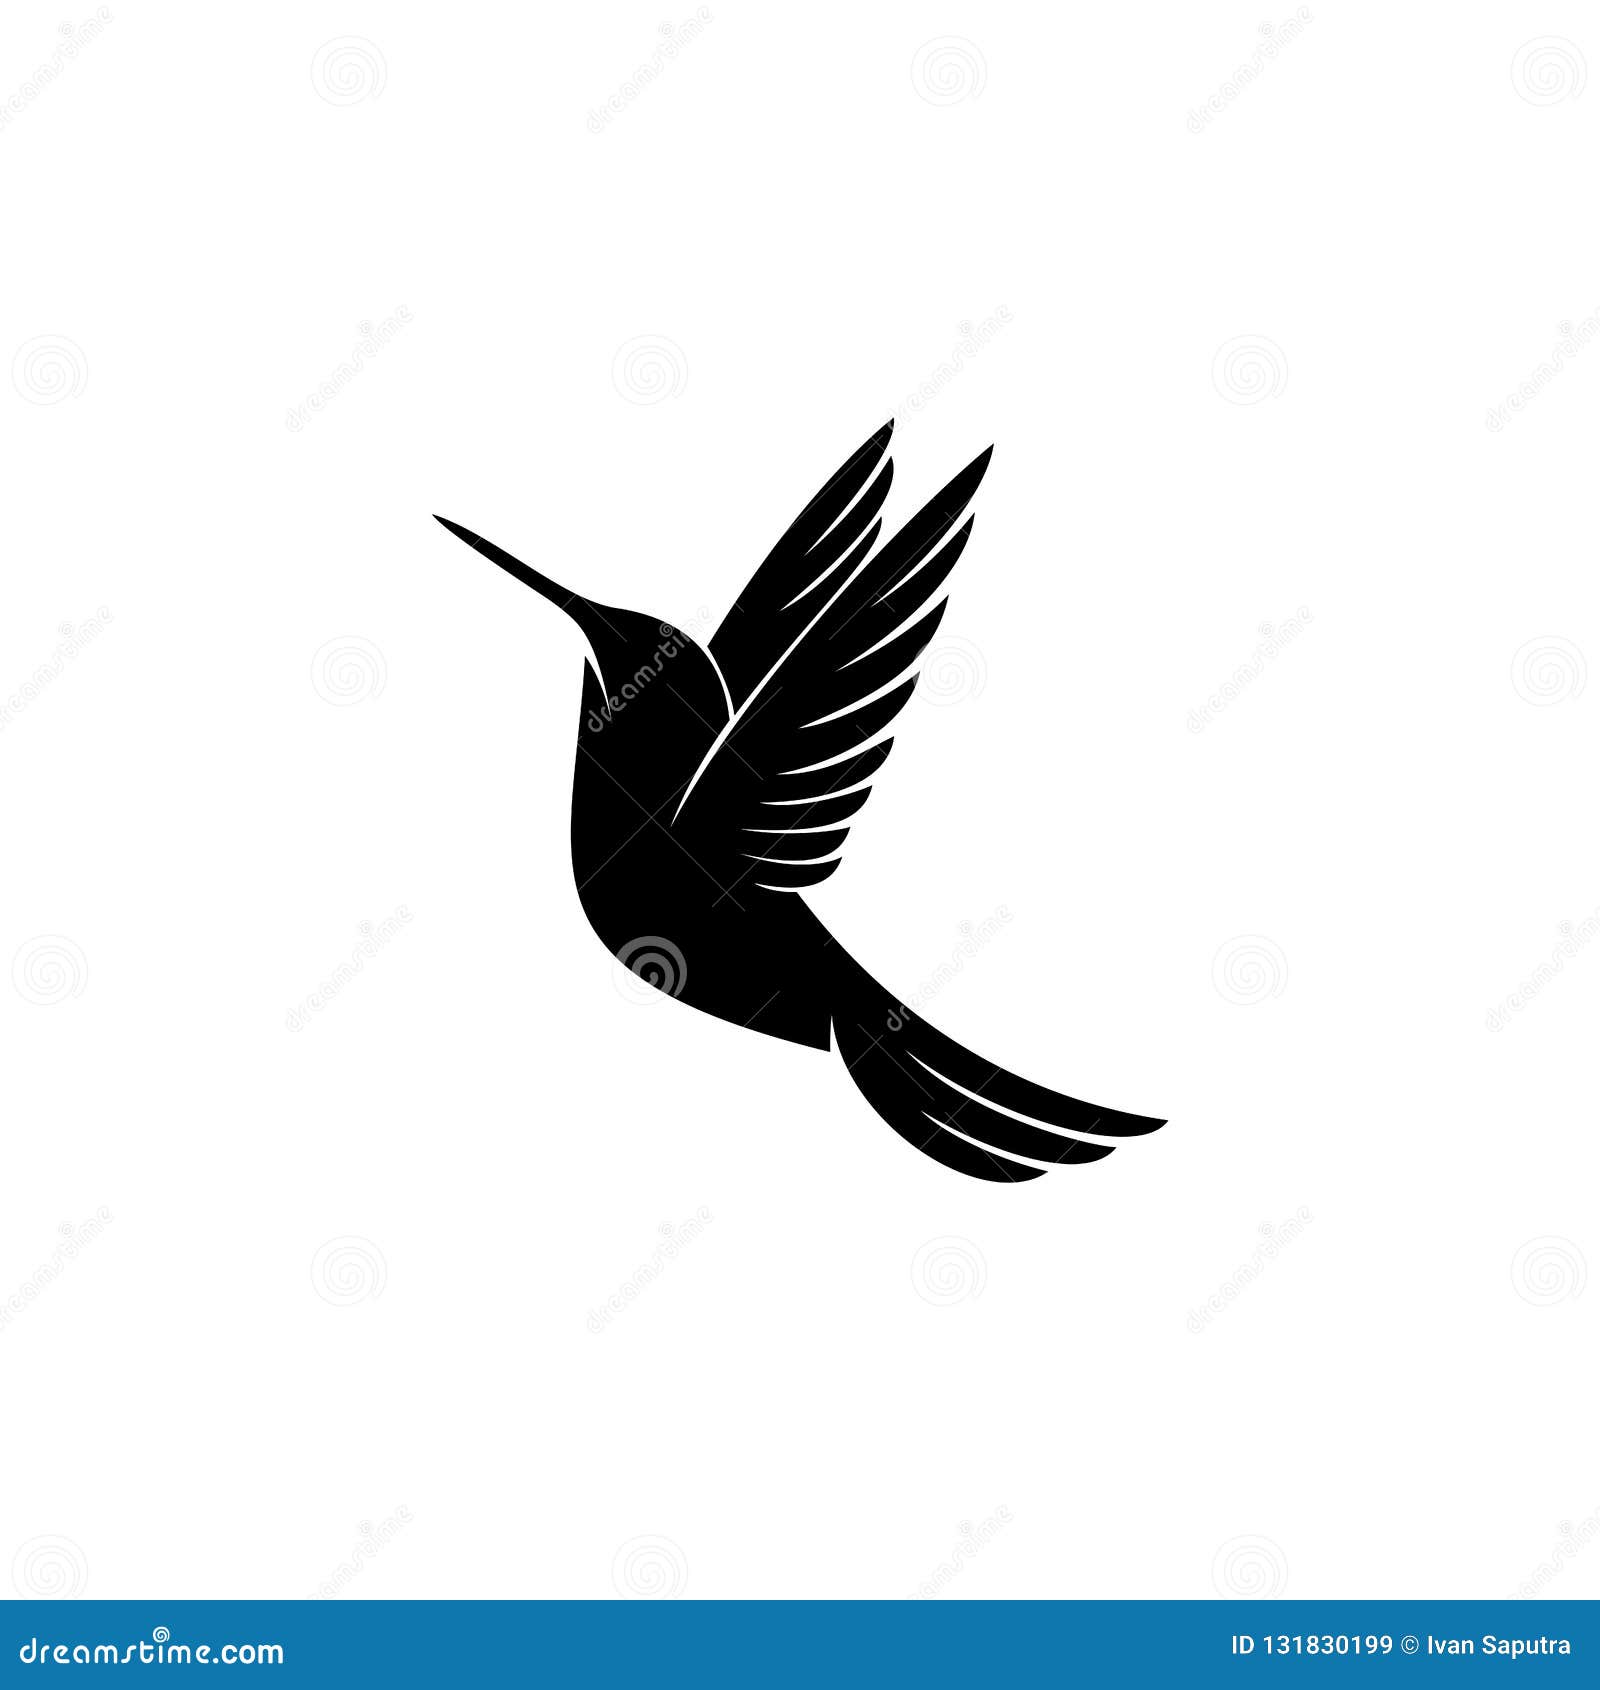 Hummingbird Logo Design Inspiration Stock Vector - Illustration of ...